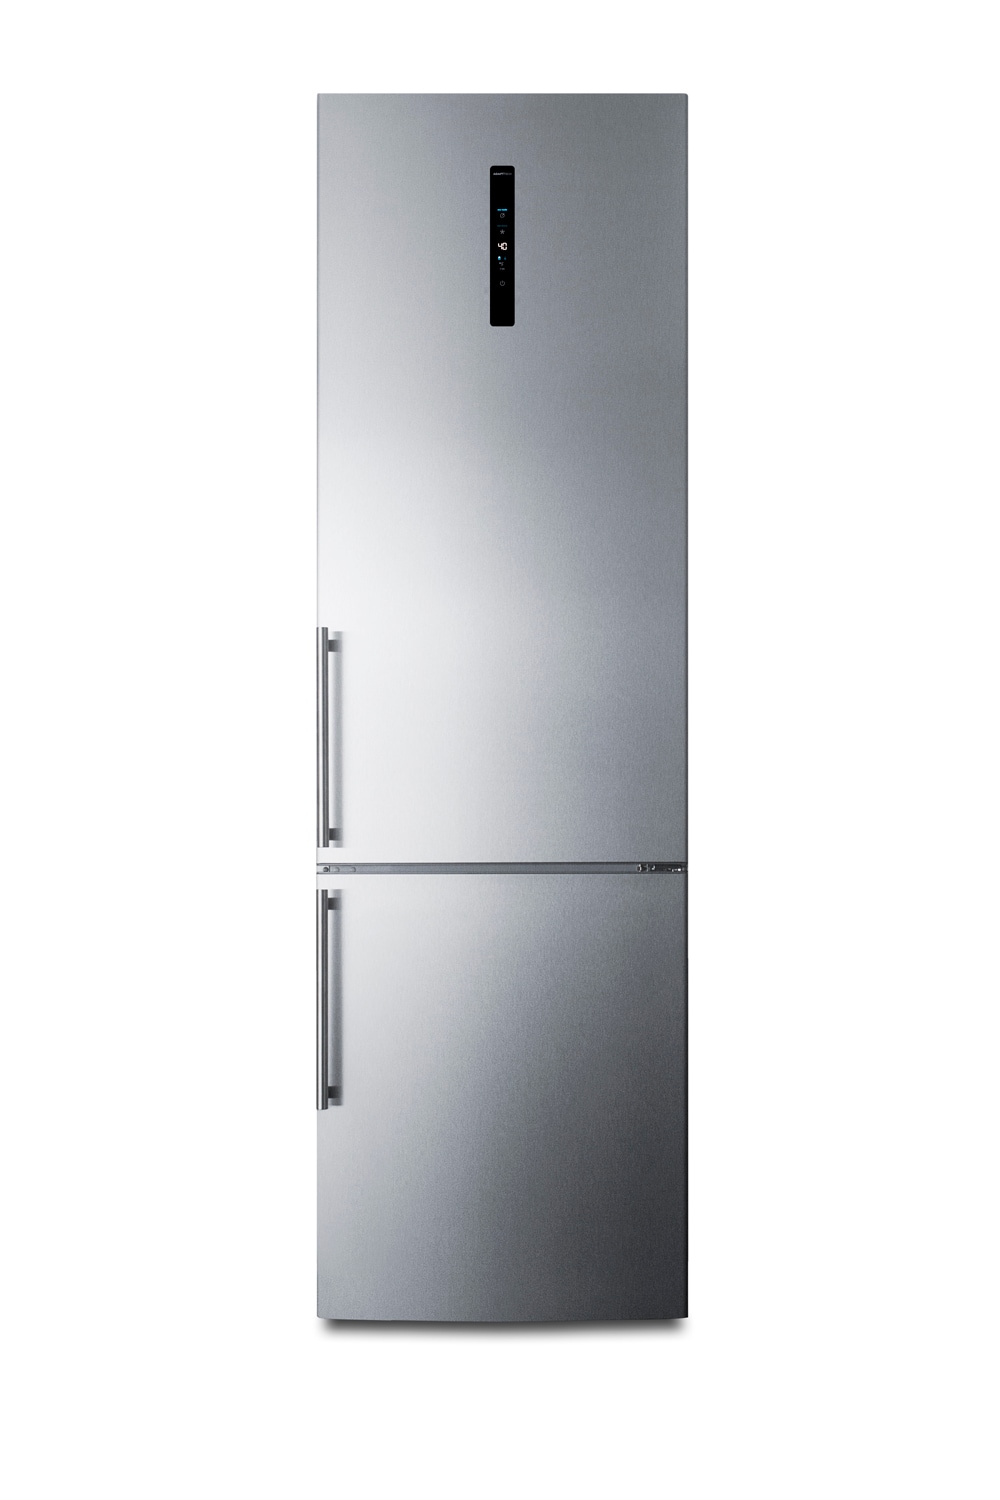 Summit FFBF181ES2 24 in. Wide Bottom Freezer Refrigerator